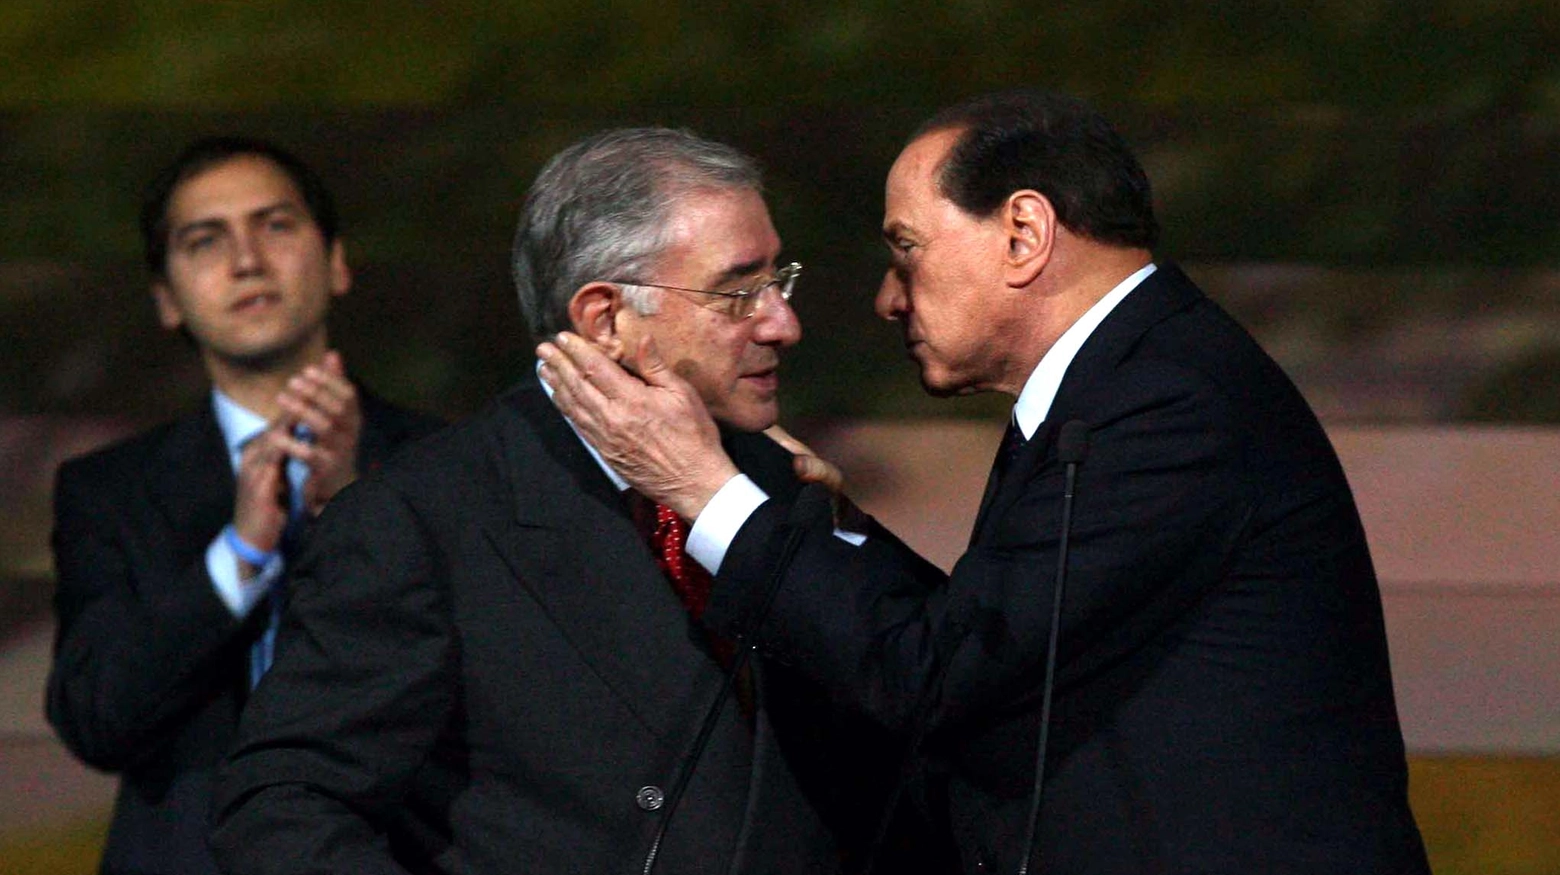 Famedio, Berlusconi iscritto tra i milanesi illustri. Dell'Utri: "Anche Cavour e Mazzini furono criticati..."